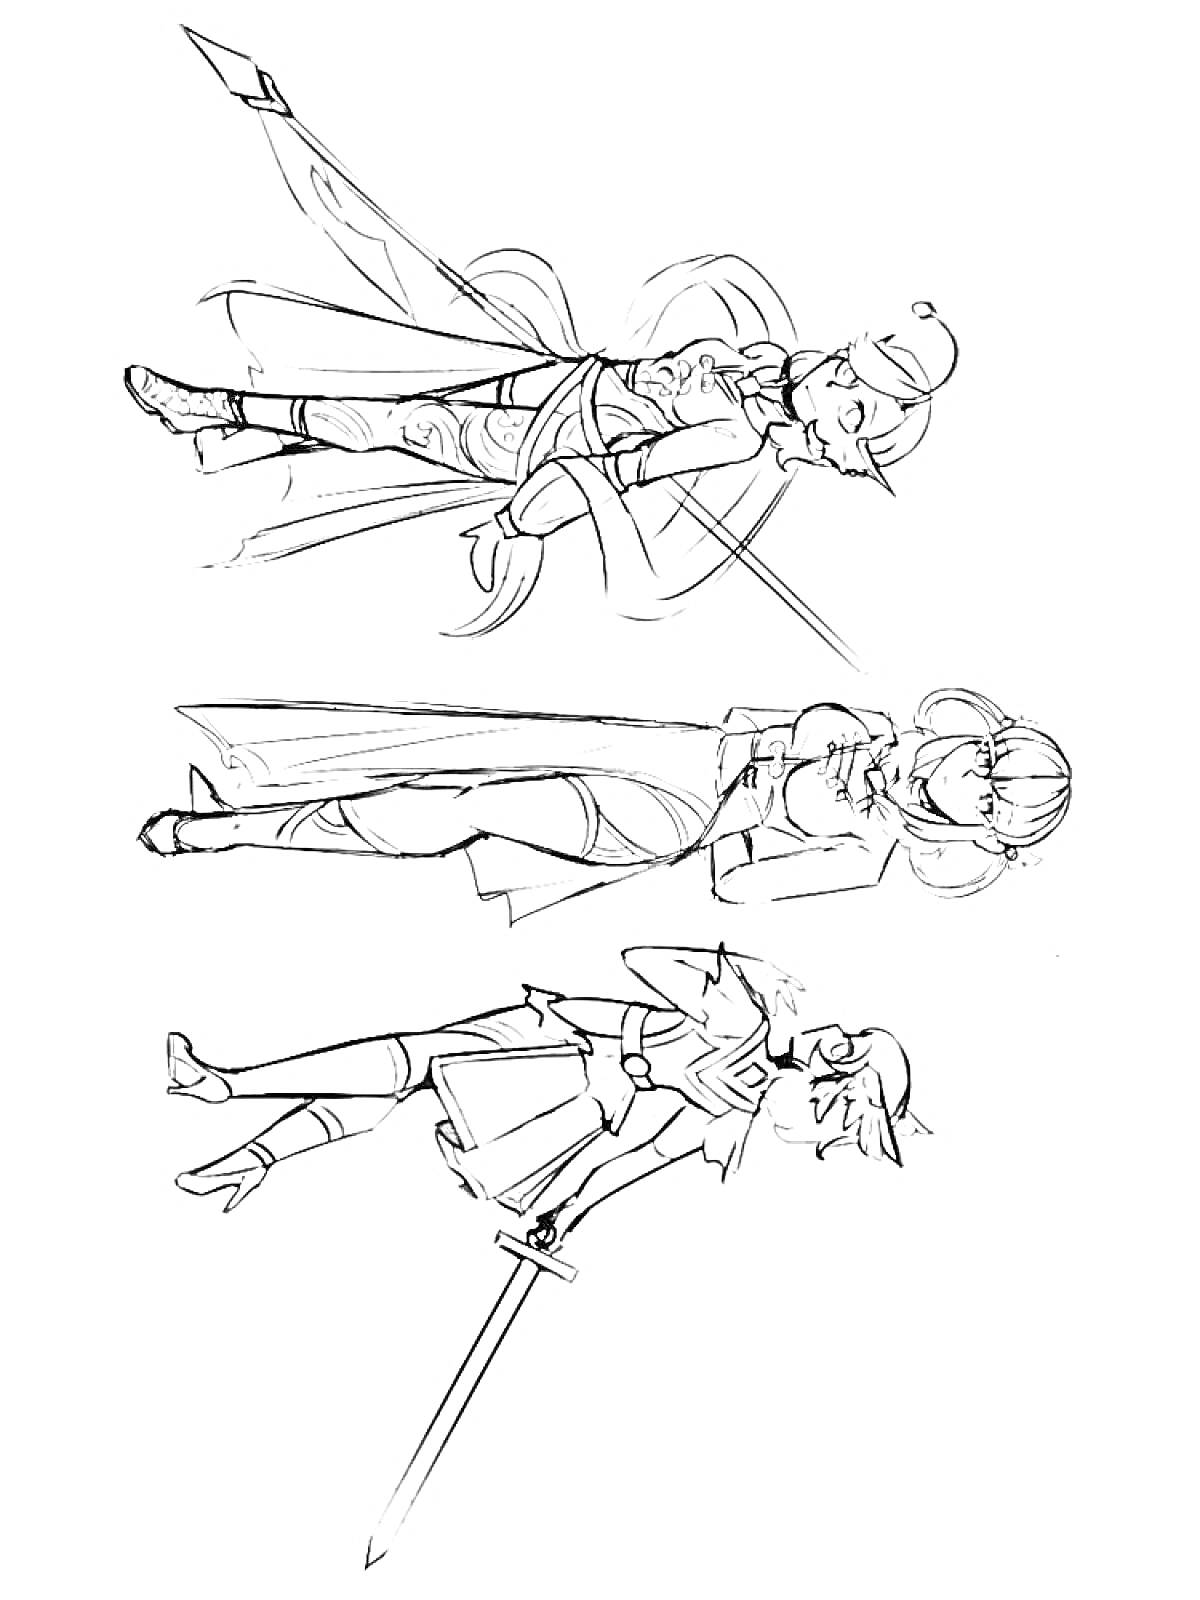 Раскраска Три персонажа из Геншин Импакт: стоящий с поднятым оружием, заклинательница с капюшоном, девушка с мечом